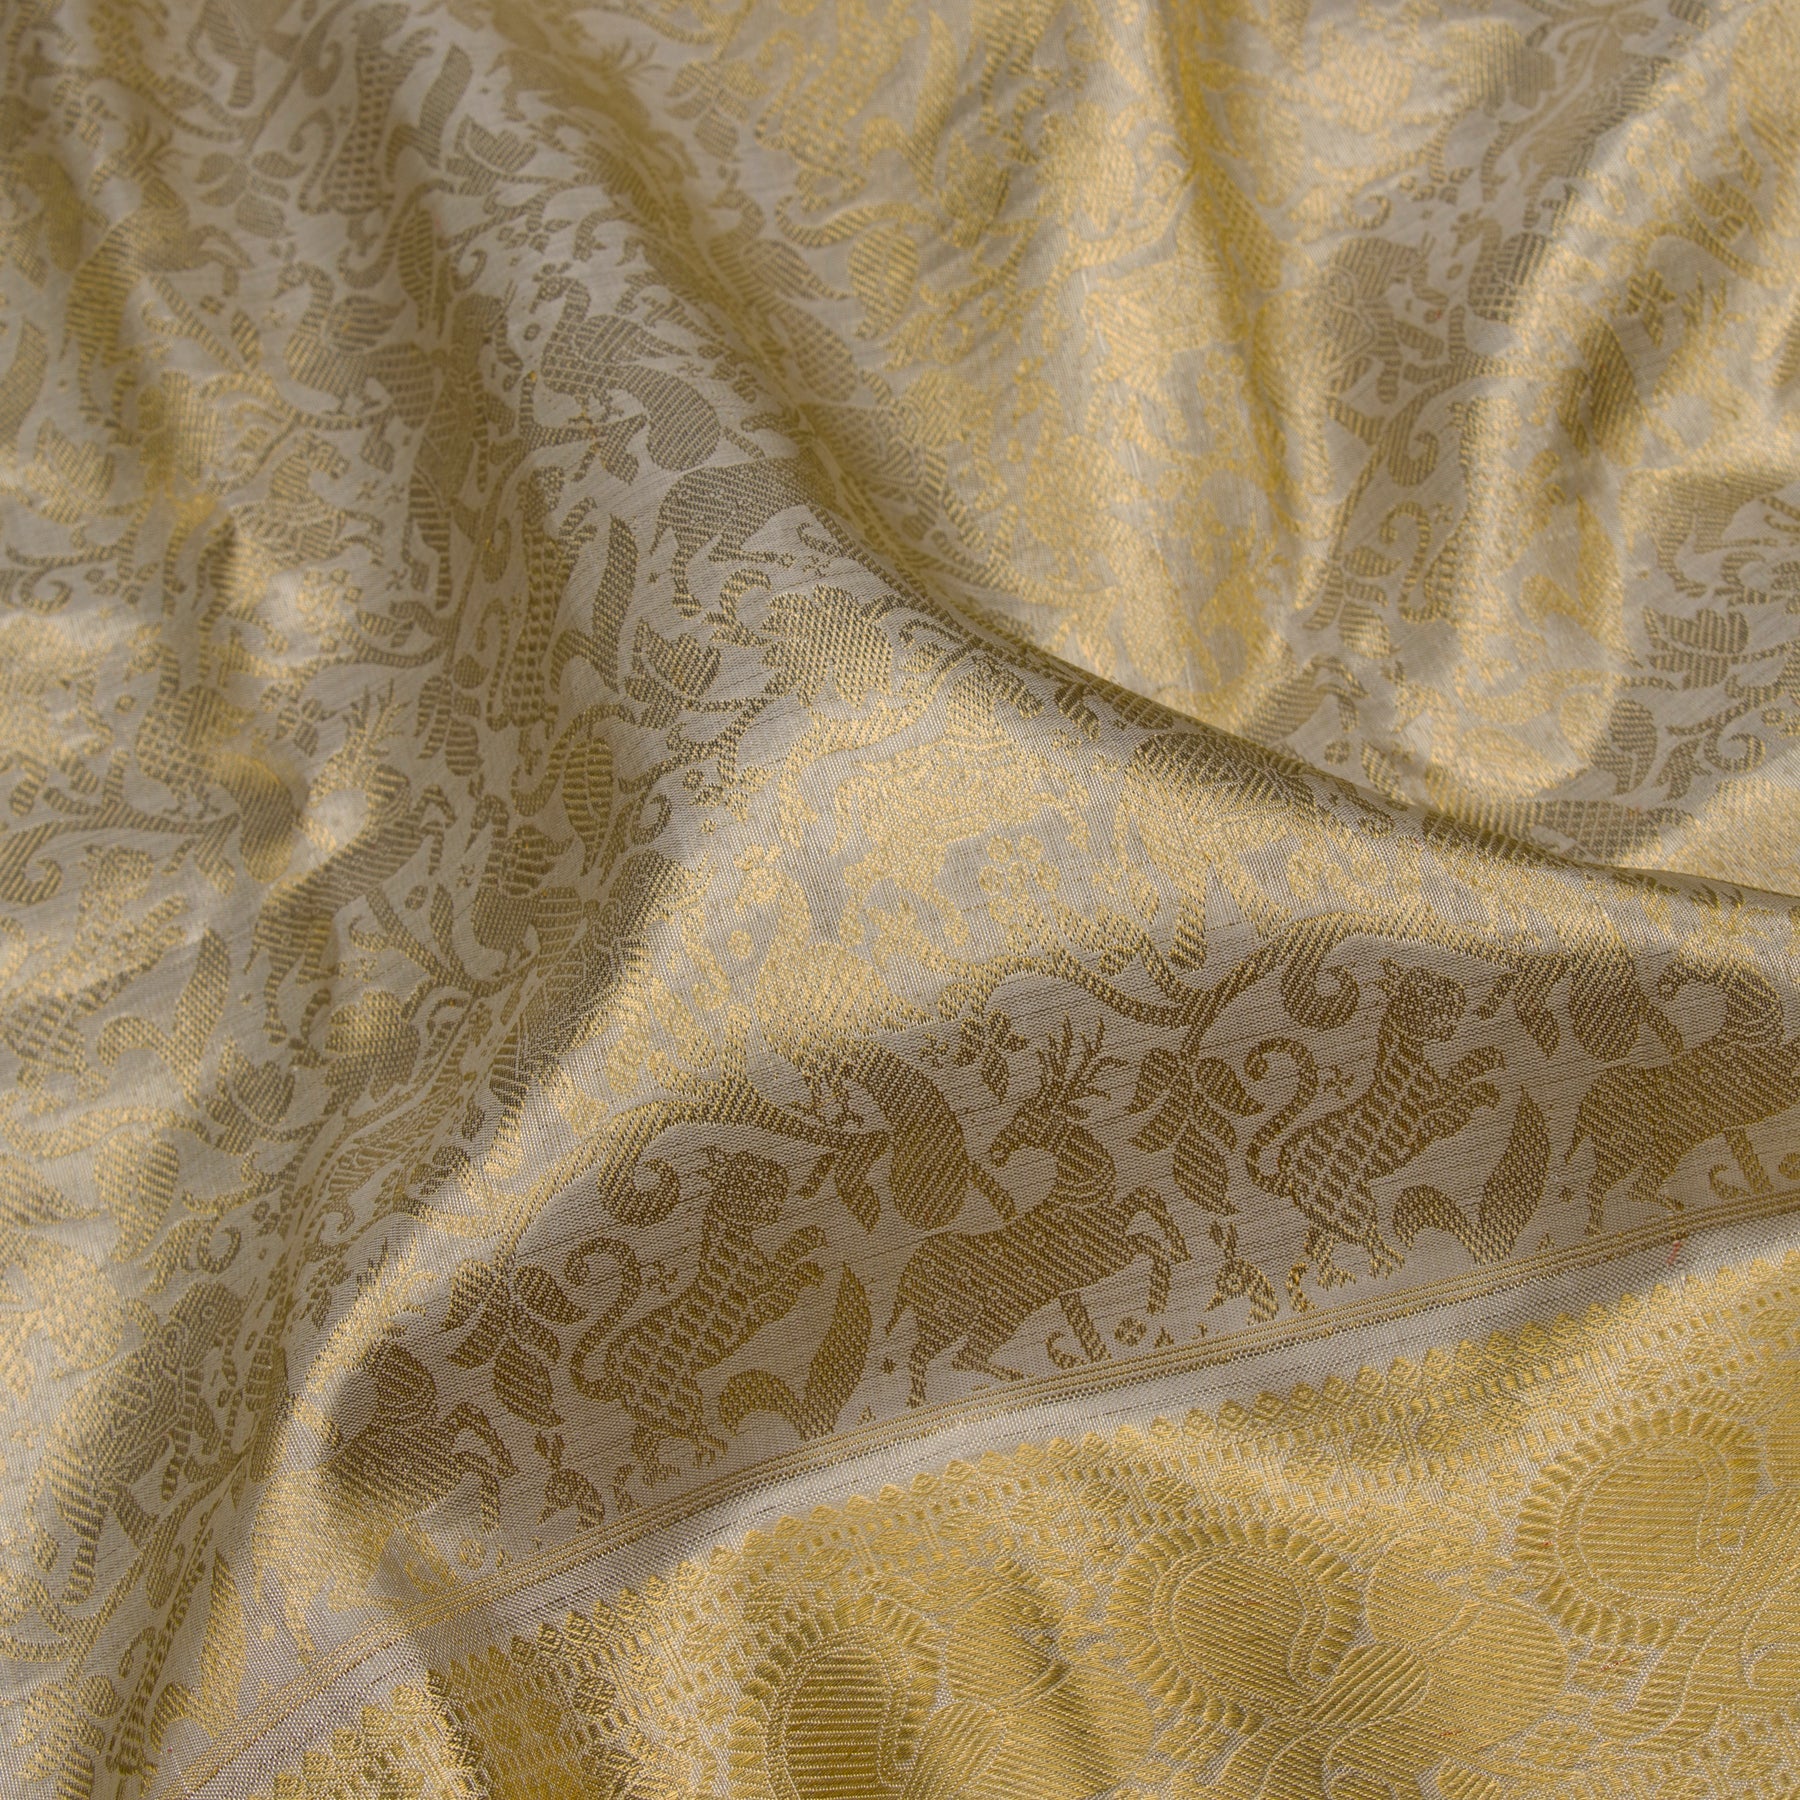 Kanakavalli Kanjivaram Silk Sari 23-110-HS001-09990 - Fabric View